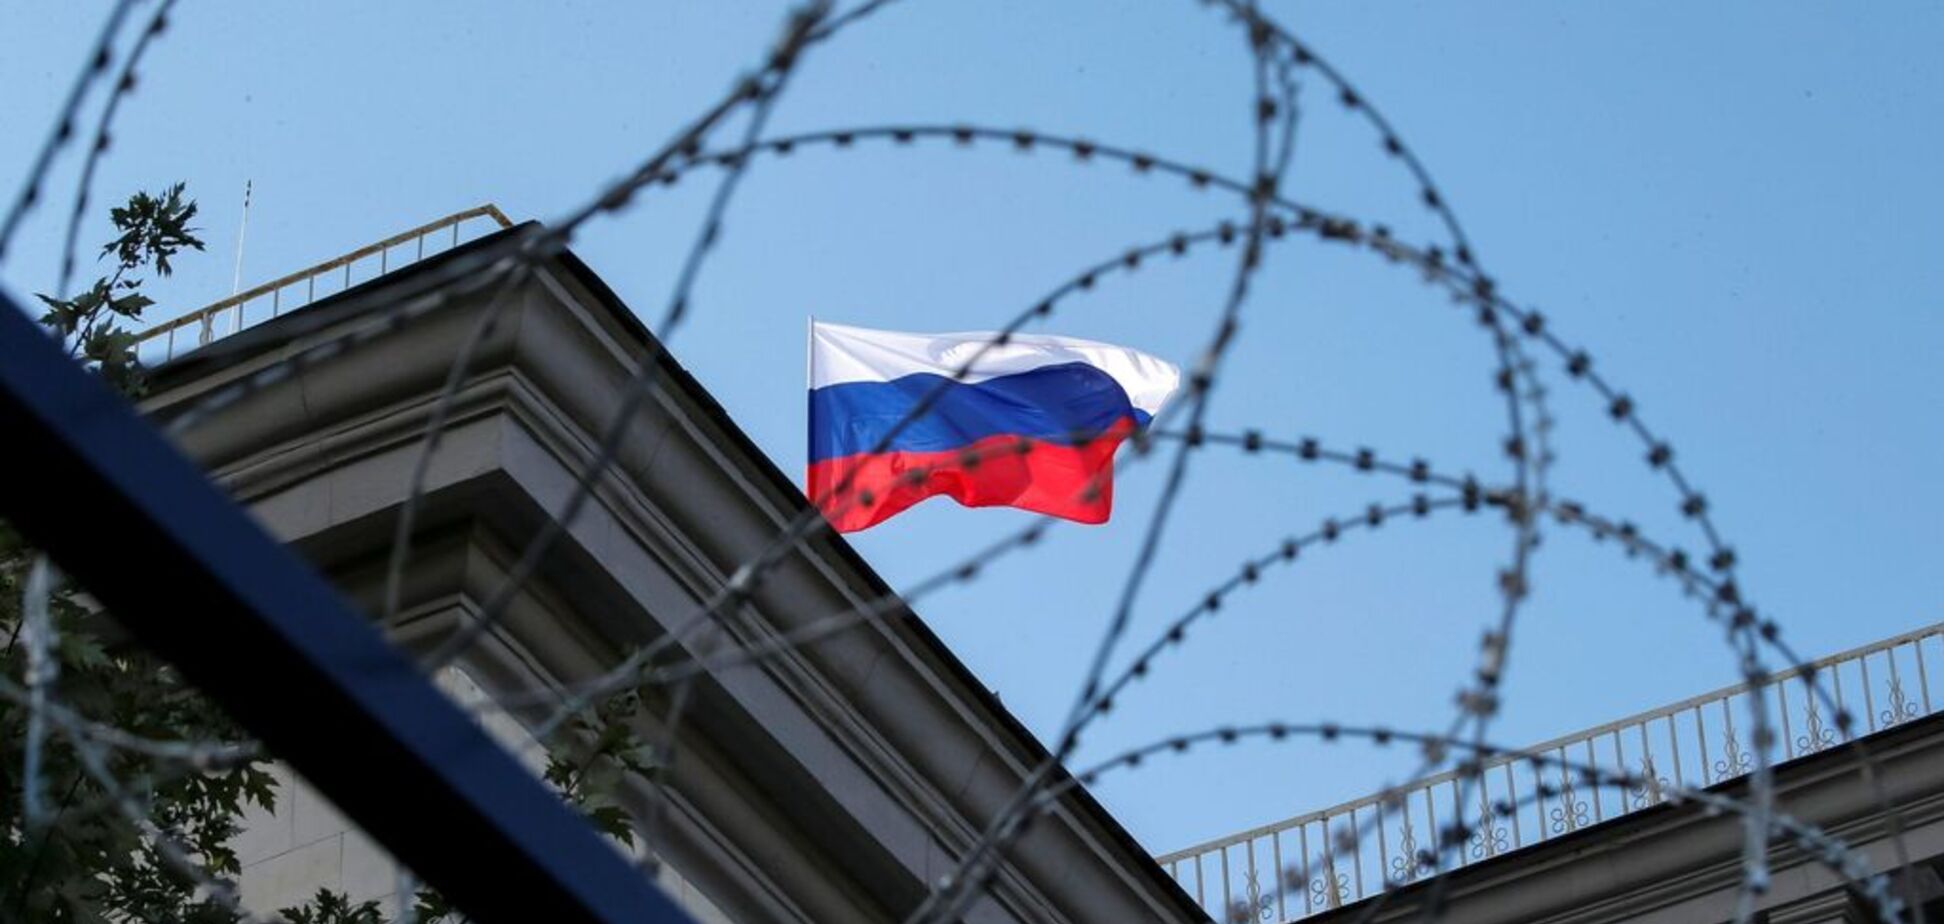 Перережут экспорт: в новых санкциях против России увидели скрытую угрозу